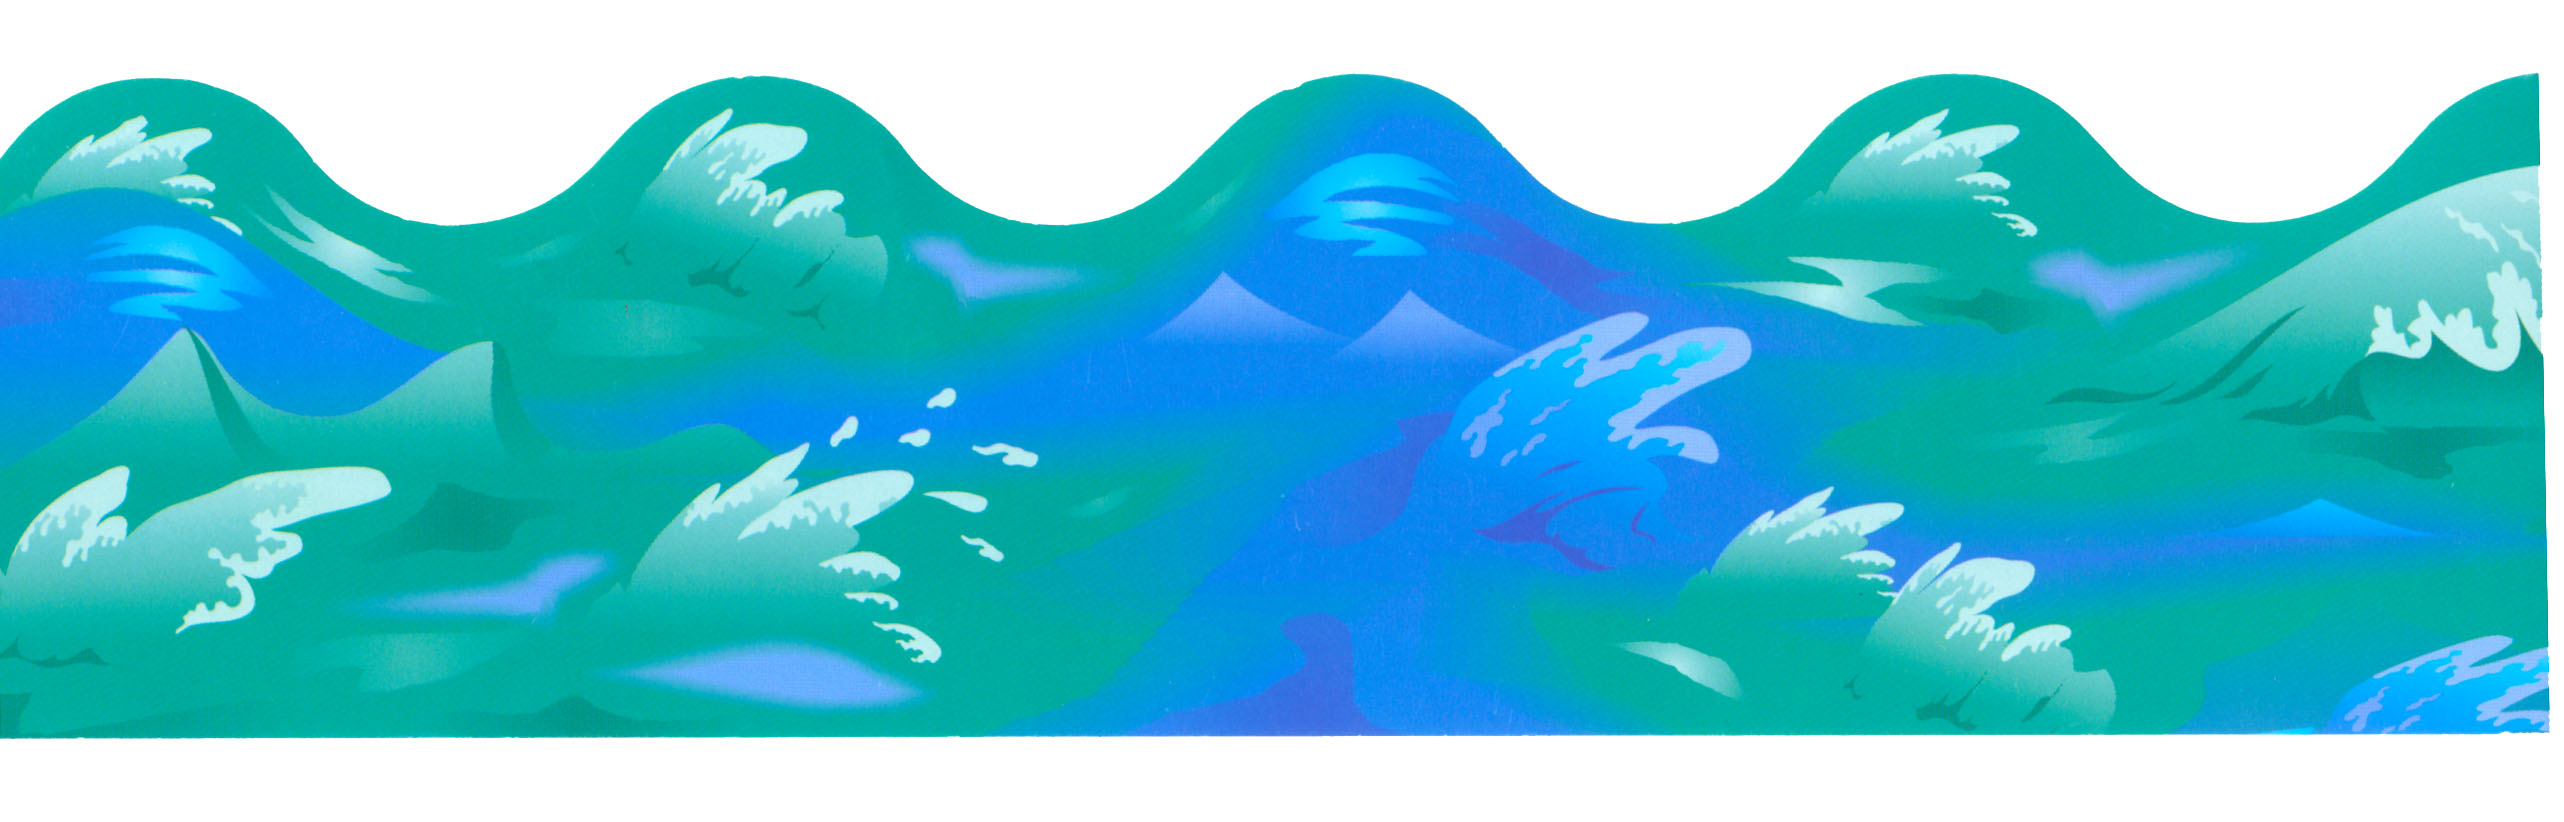 Wave Clipart Beach Wave - Beach Waves Clipart - HD Wallpaper 